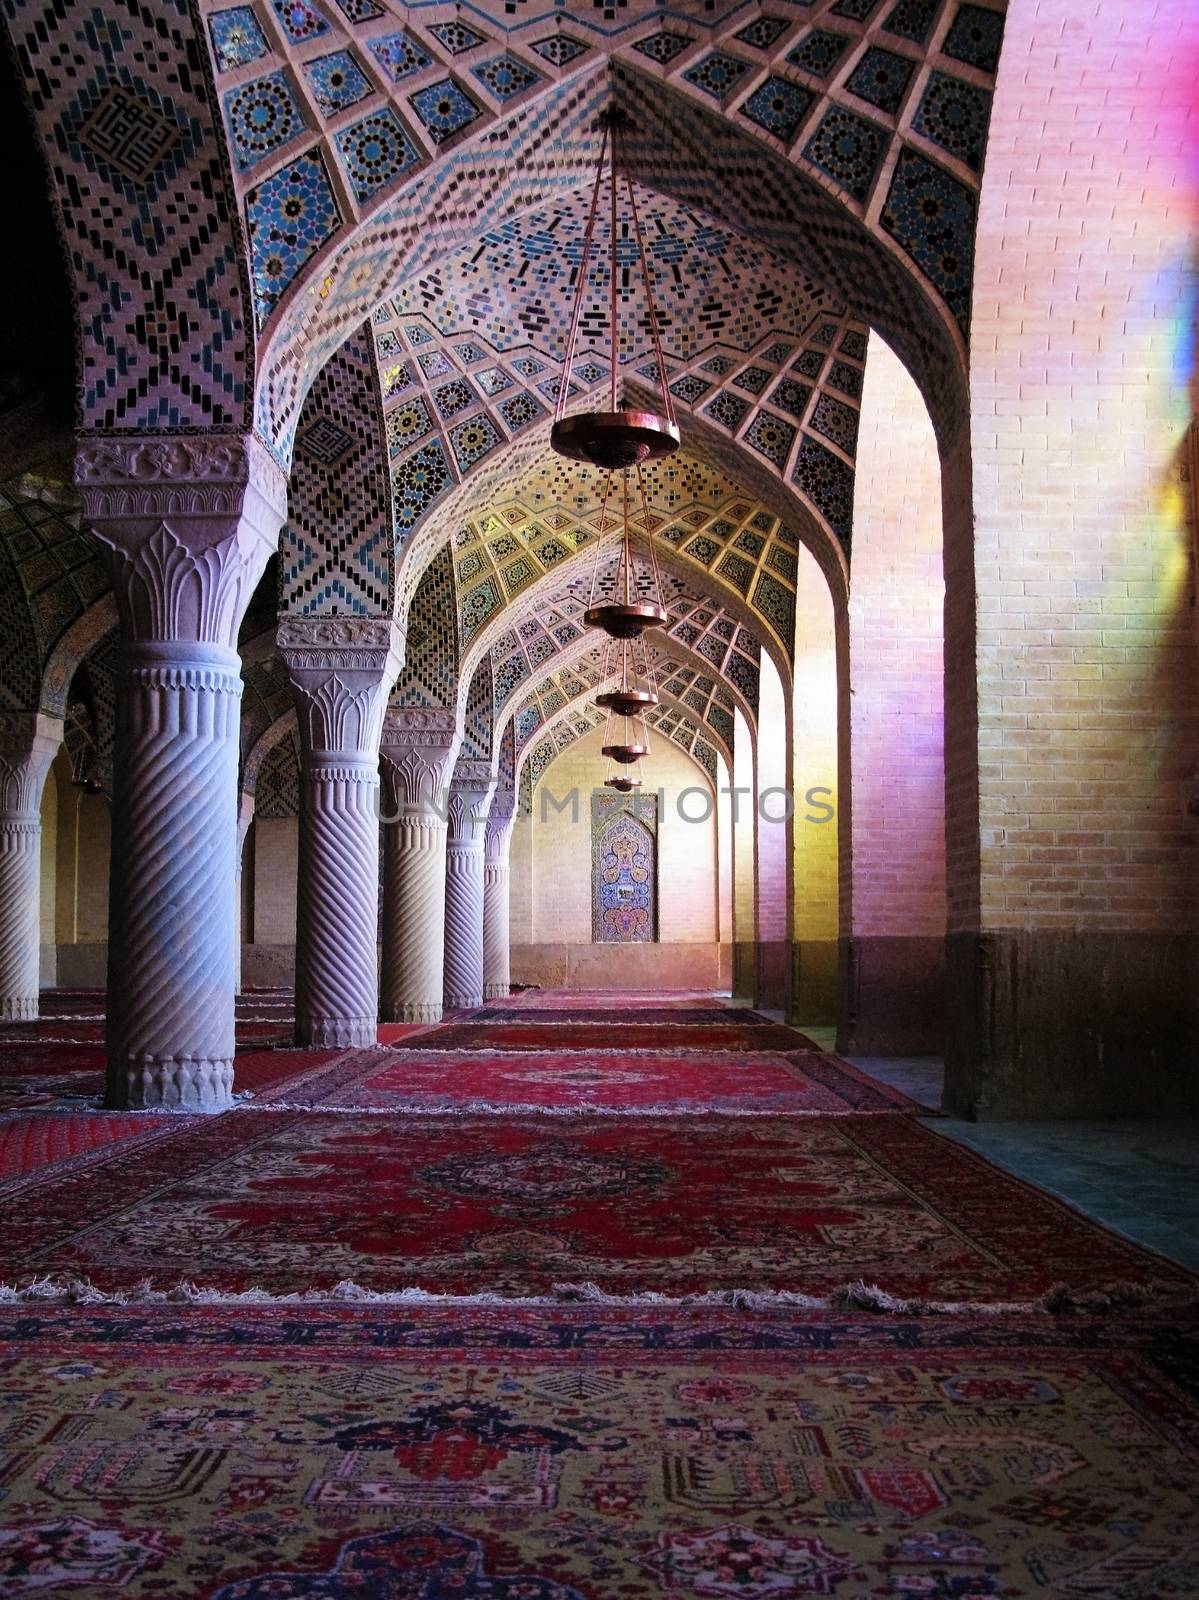 Interior of Nasir ol Molk Mosque, Shiraz, Iran by homocosmicos